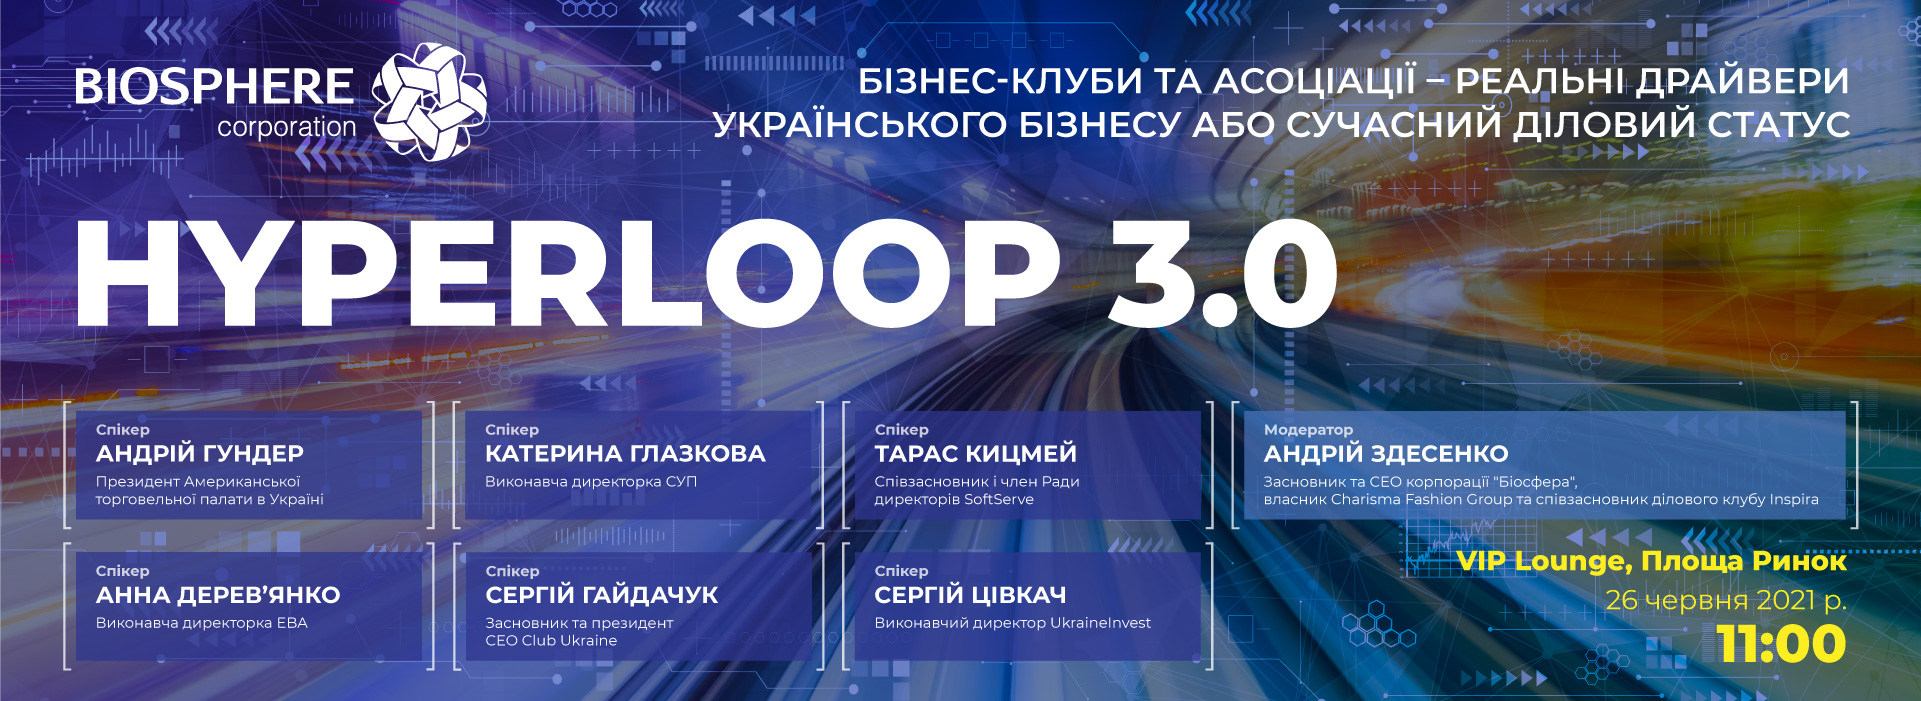 Hyperloop 3.0. Бізнес-клуби та асоціації - реальні драйвери українського бізнесу або сучасний діловий статус